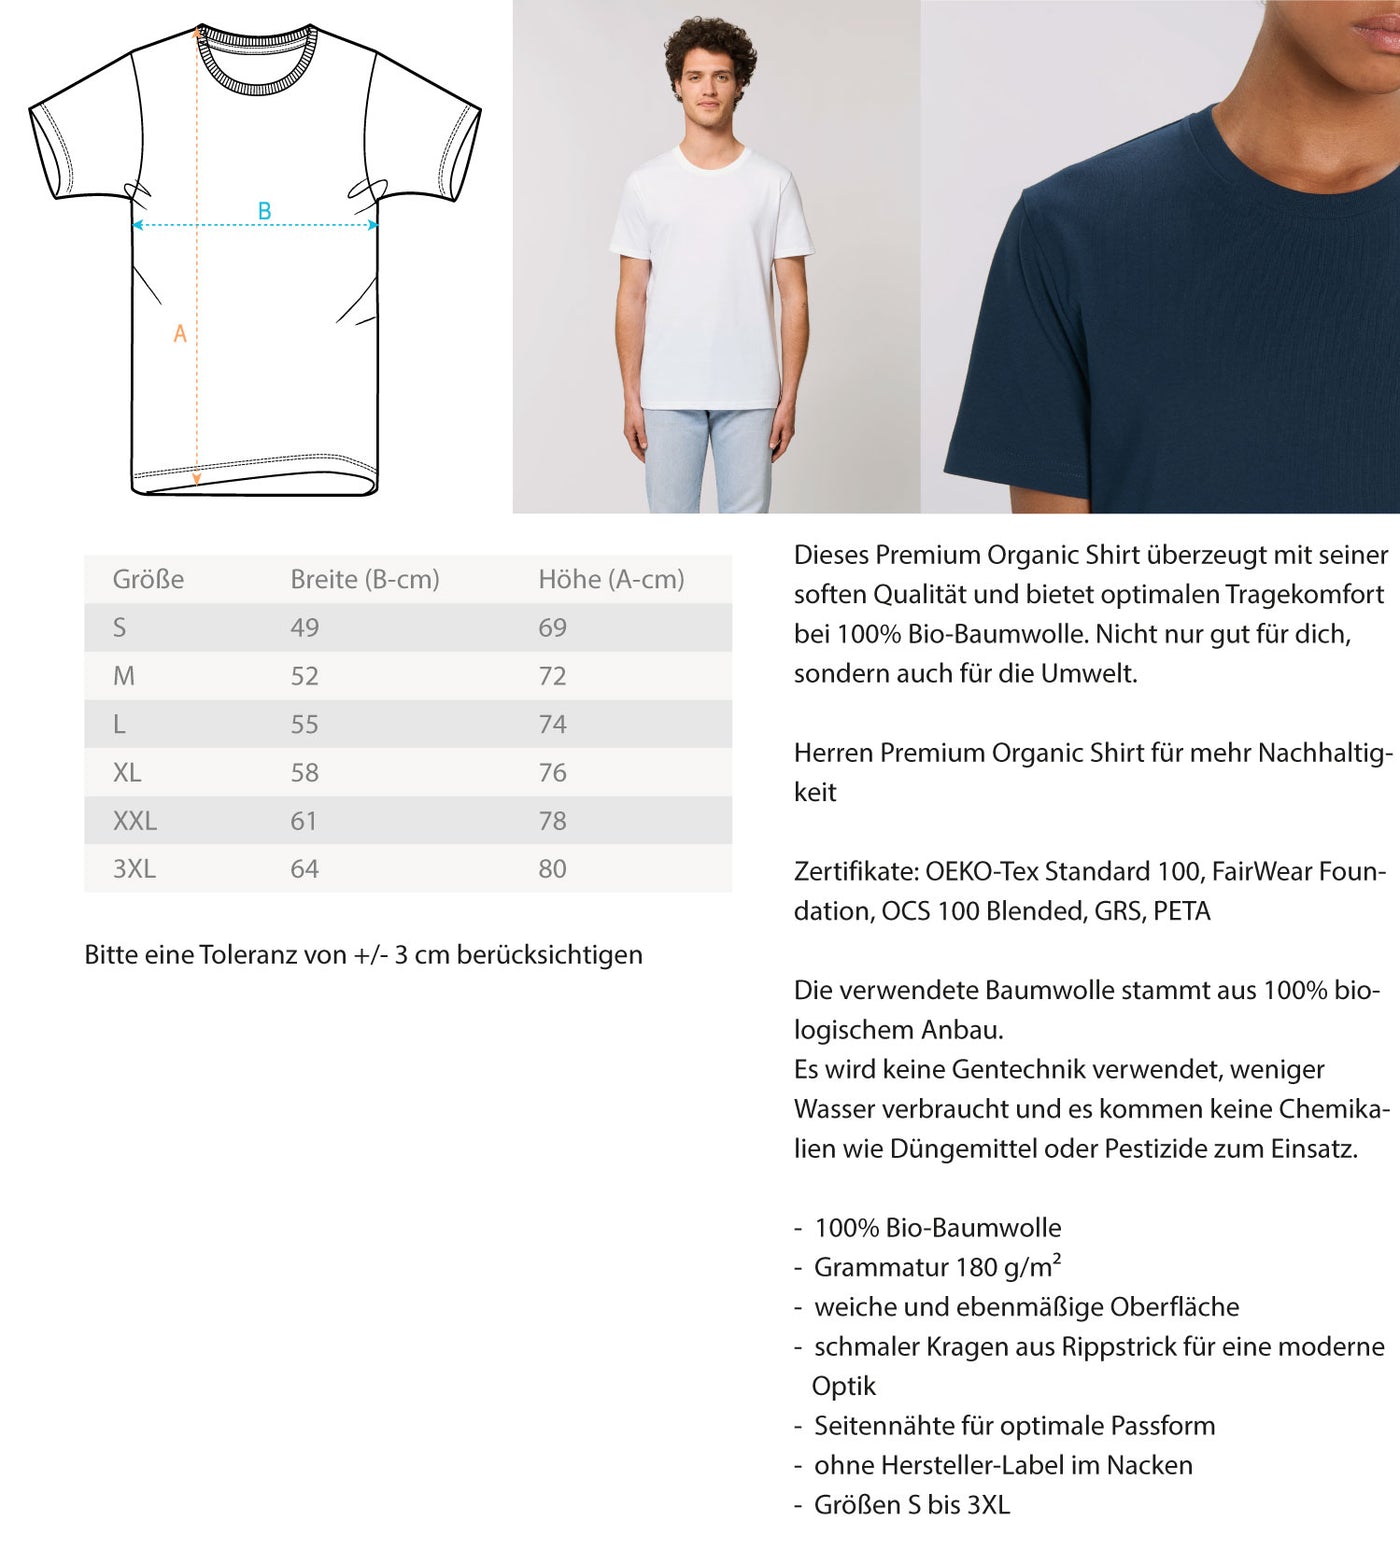 Tiefschnee Skier - Herren Premium Organic T-Shirt